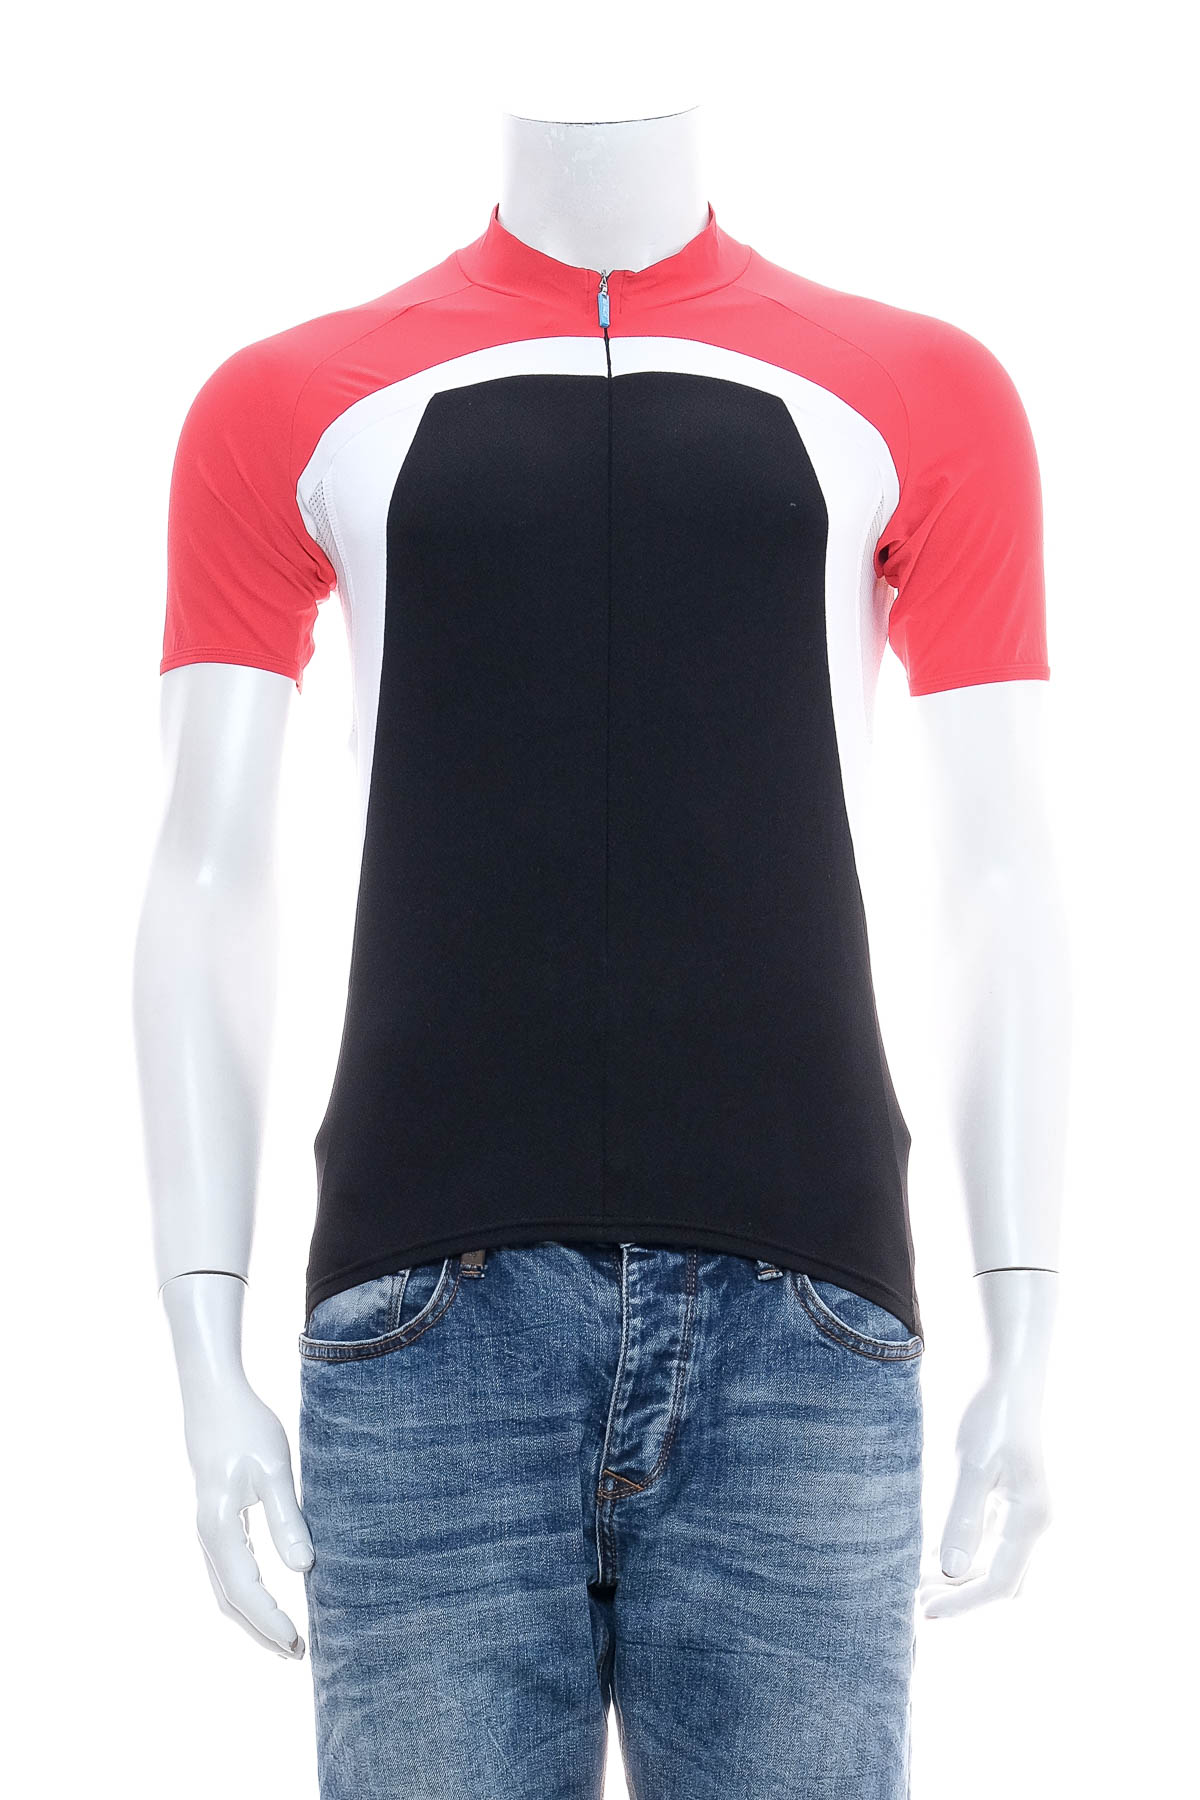 Αντρική μπλούζα Για ποδηλασία - BIORACER - 0